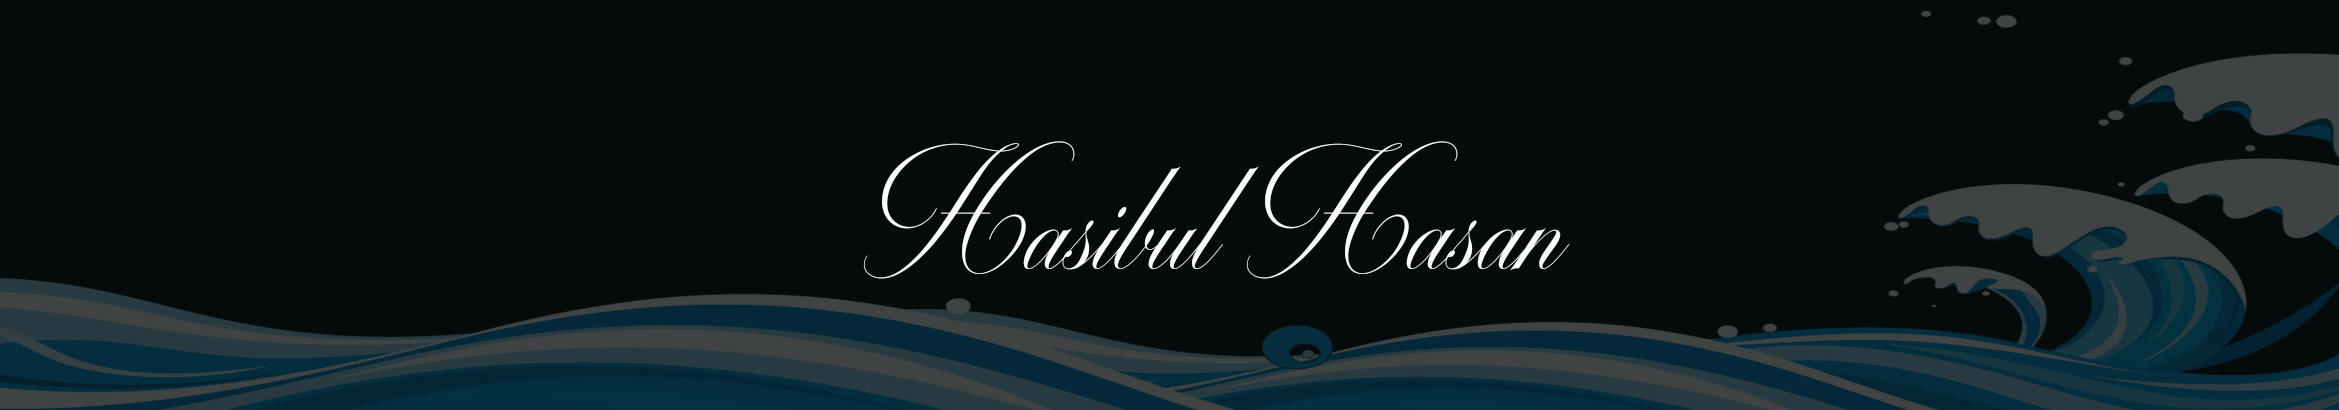 Profil-Banner von Hasibul Hasan